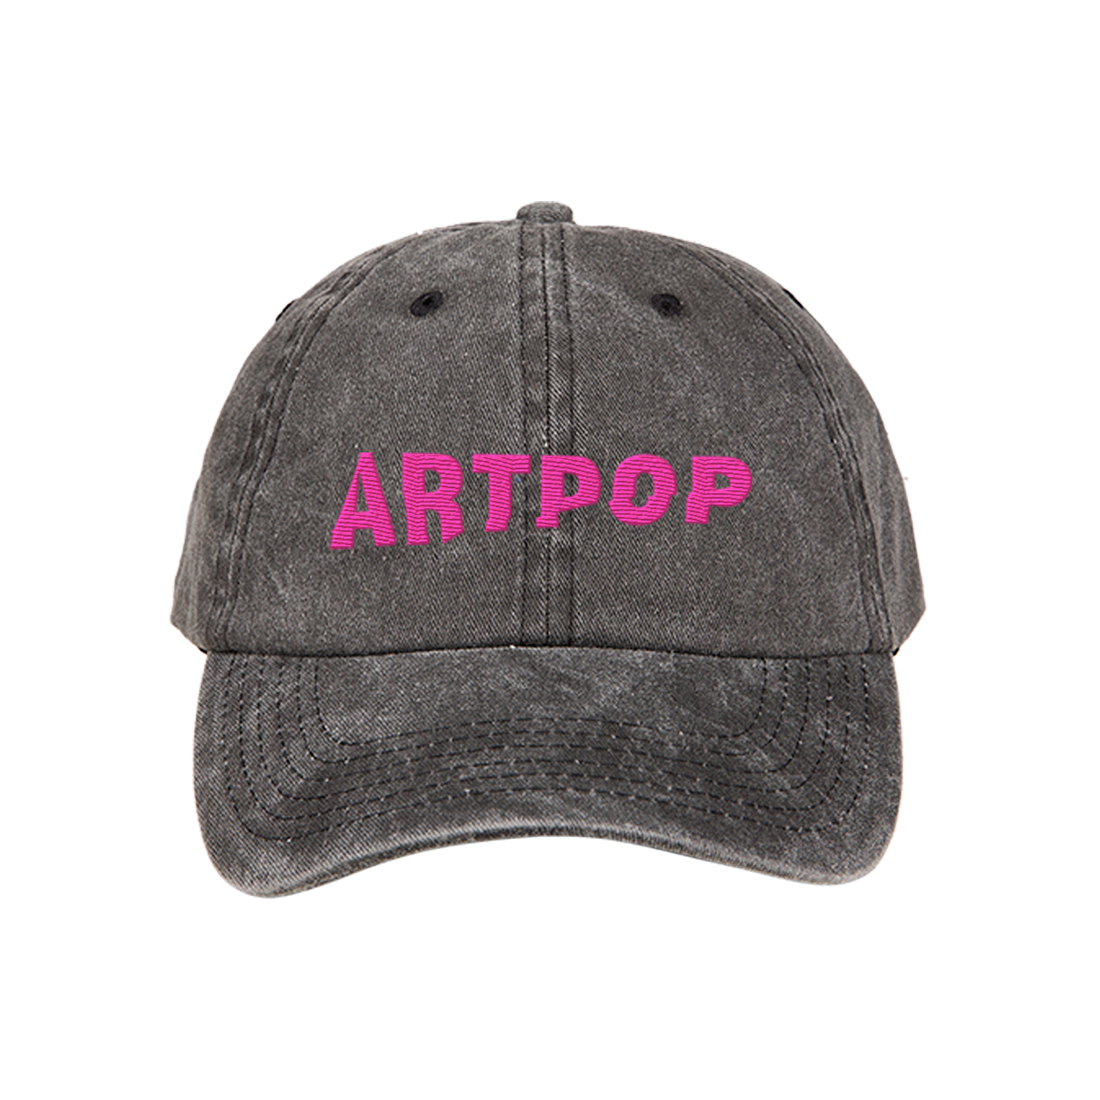 Lady Gaga - ARTPOP Washed Dad Hat